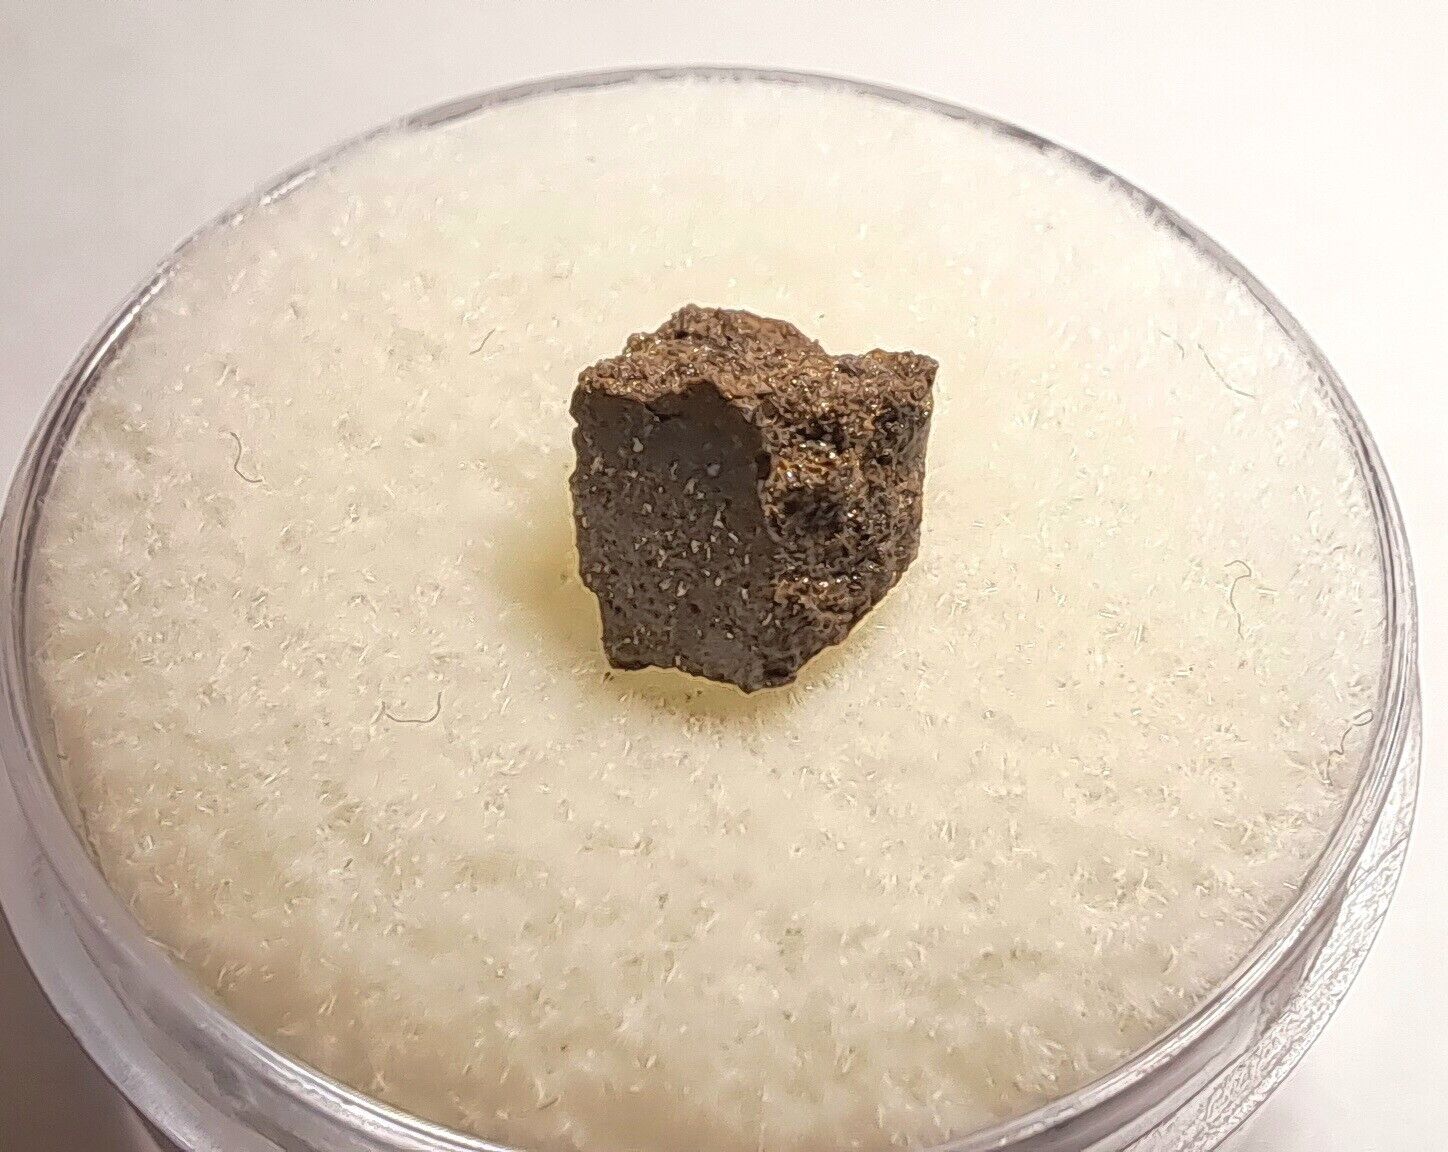 Big Rock Donga Meteorite - H6 Chondrite - 1970 Australia Find. 0.481 grams